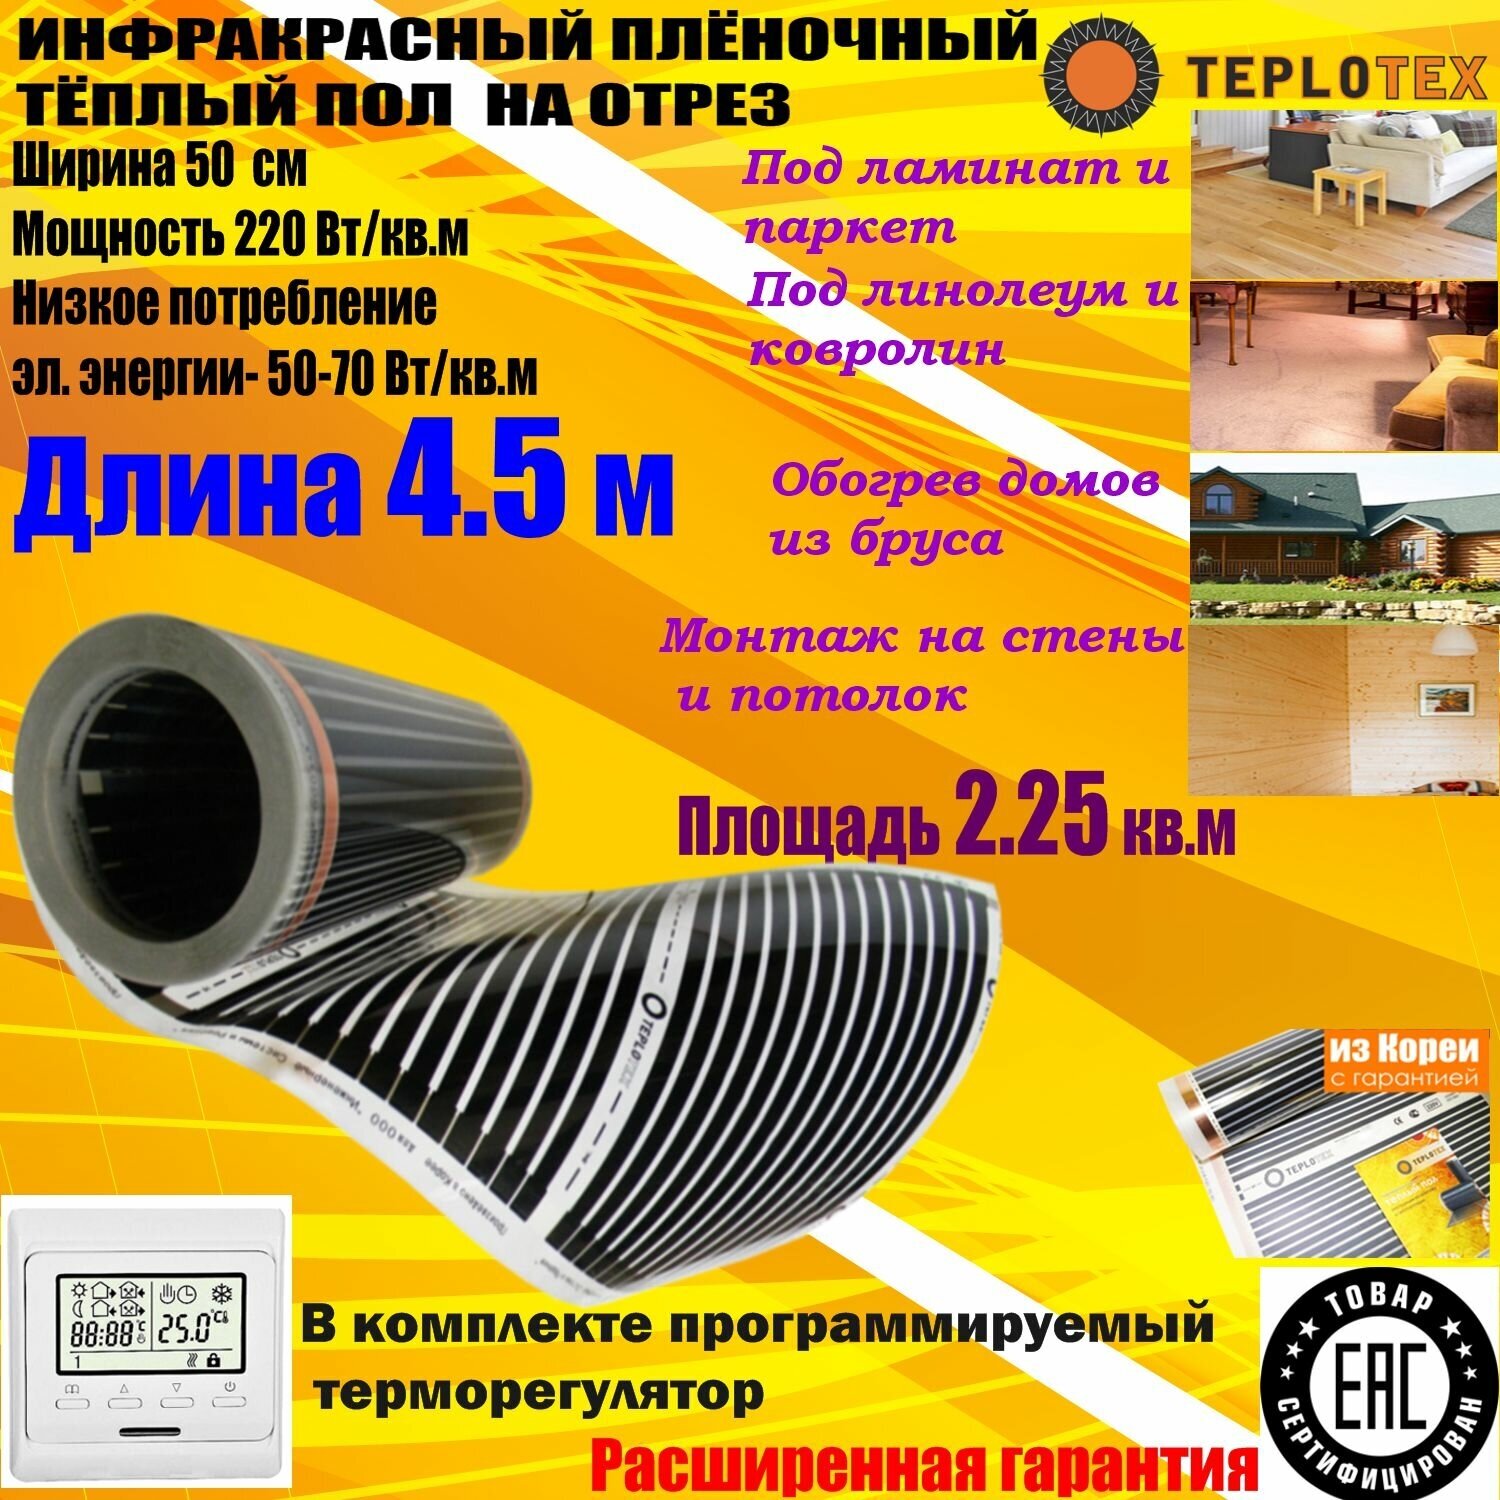 Комплект: Инфракрасный тёплый пол на отрез: TEPLOTEX-длина 4.5 м/площадь обогрева 2.25 кв. м/мощность 495 Вт+Электронный терморегулятор Е51 - фотография № 1